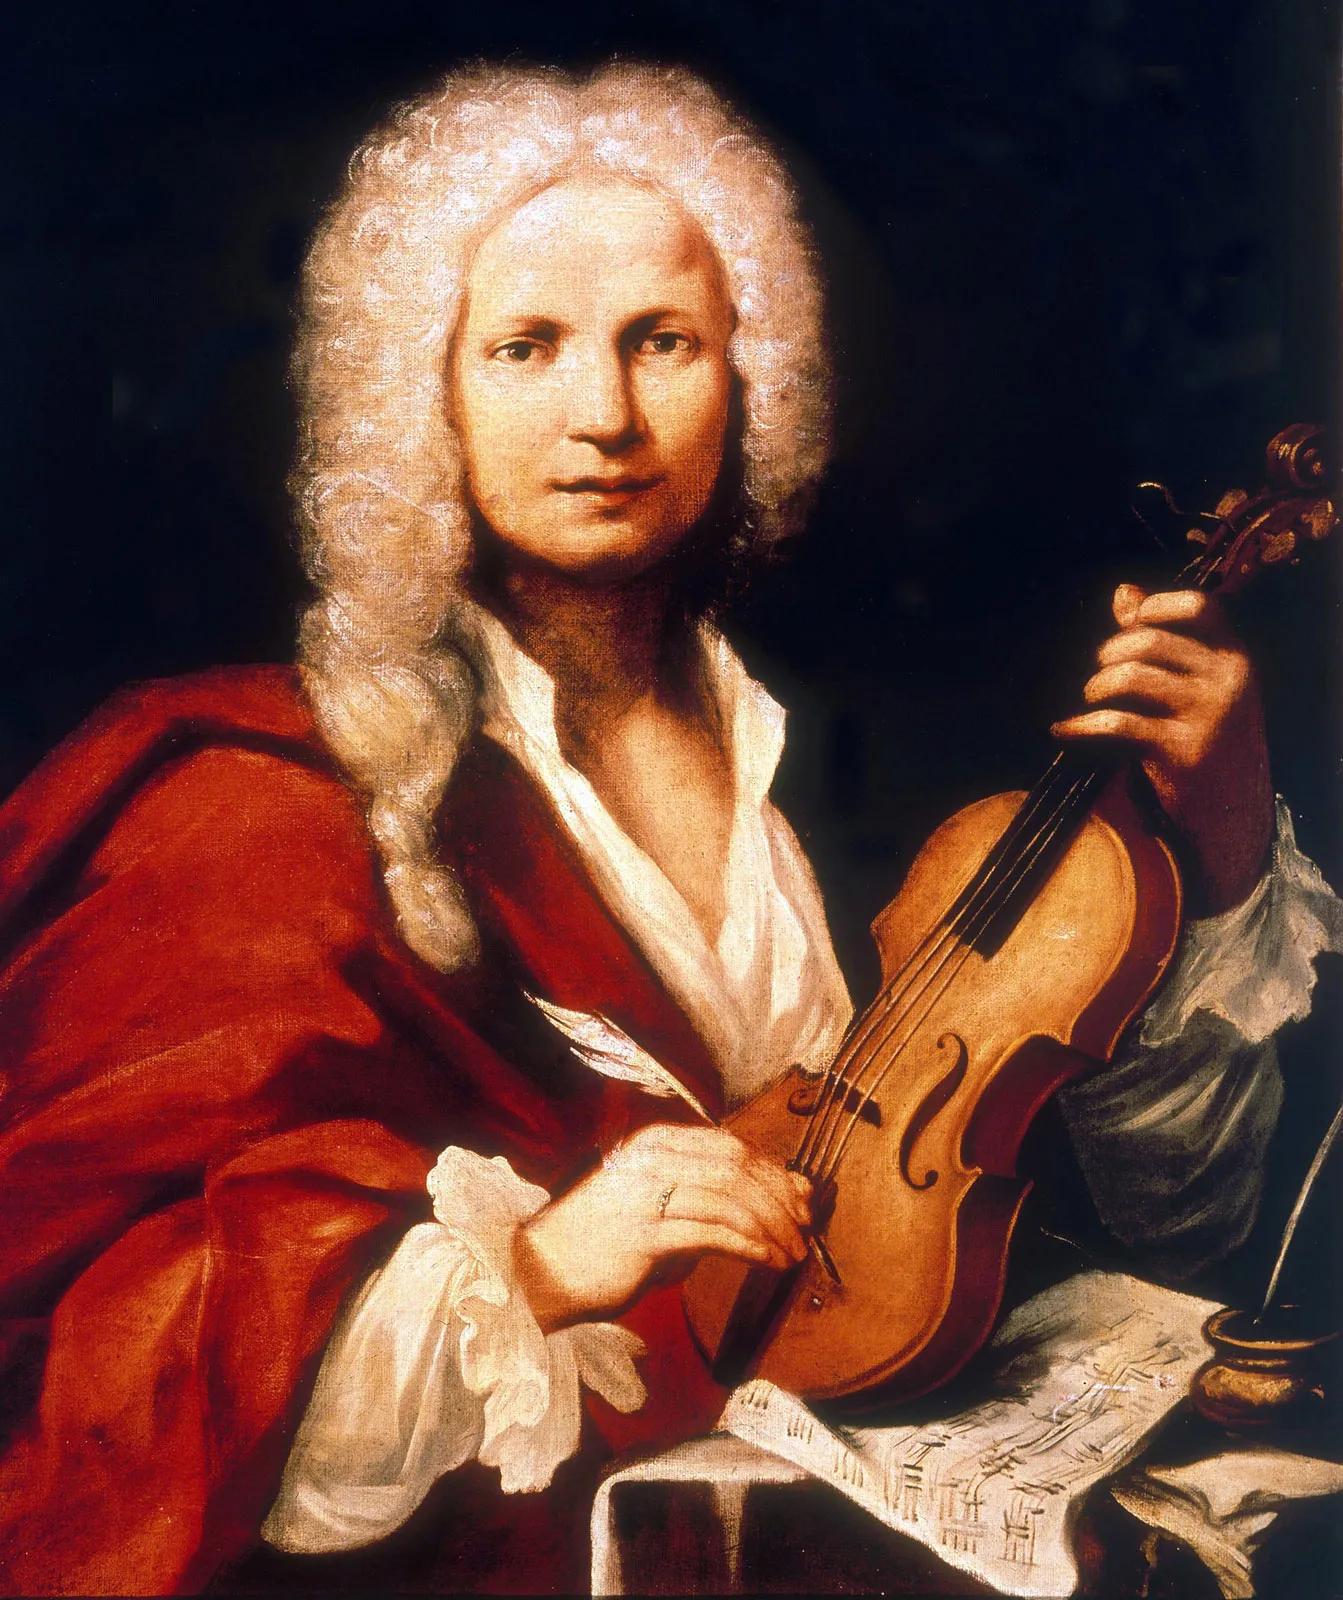 vivaldi en violin - Qué instrumentos utiliza Vivaldi